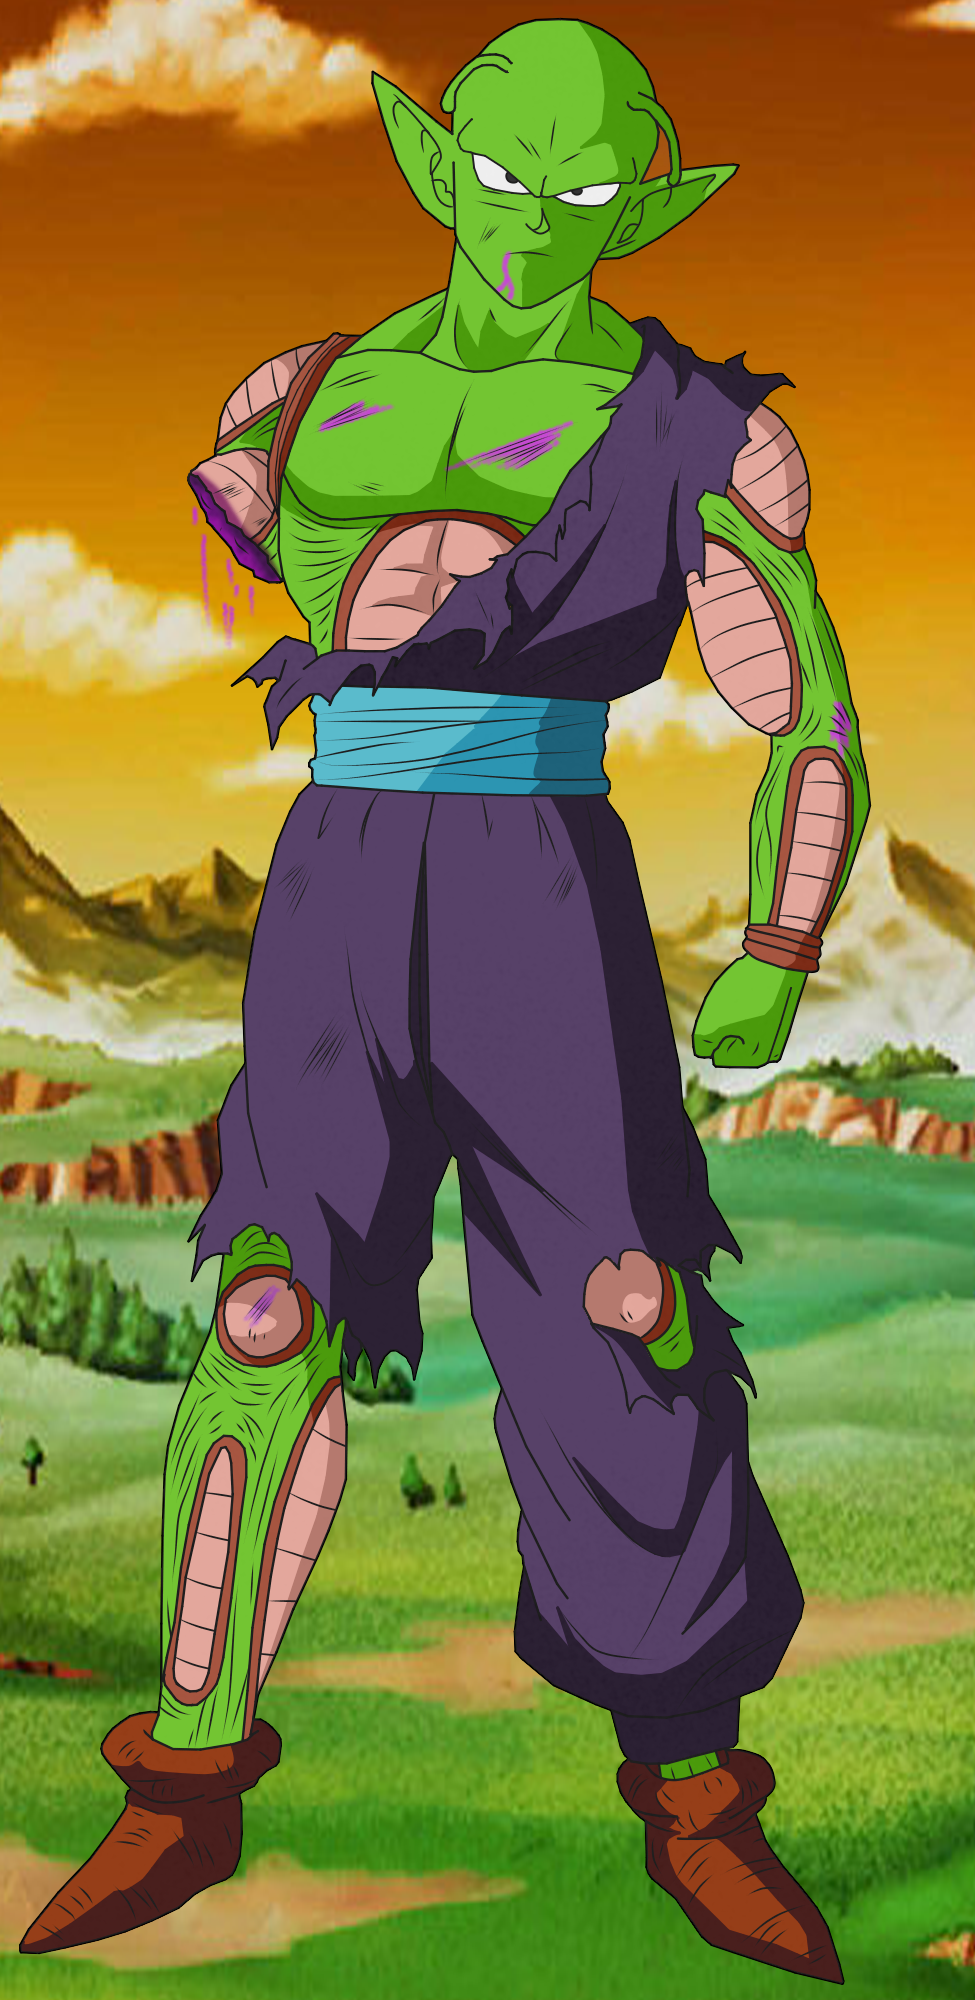 Piccolo Dragon Ball Super Super Hero by BardockSonic on DeviantArt